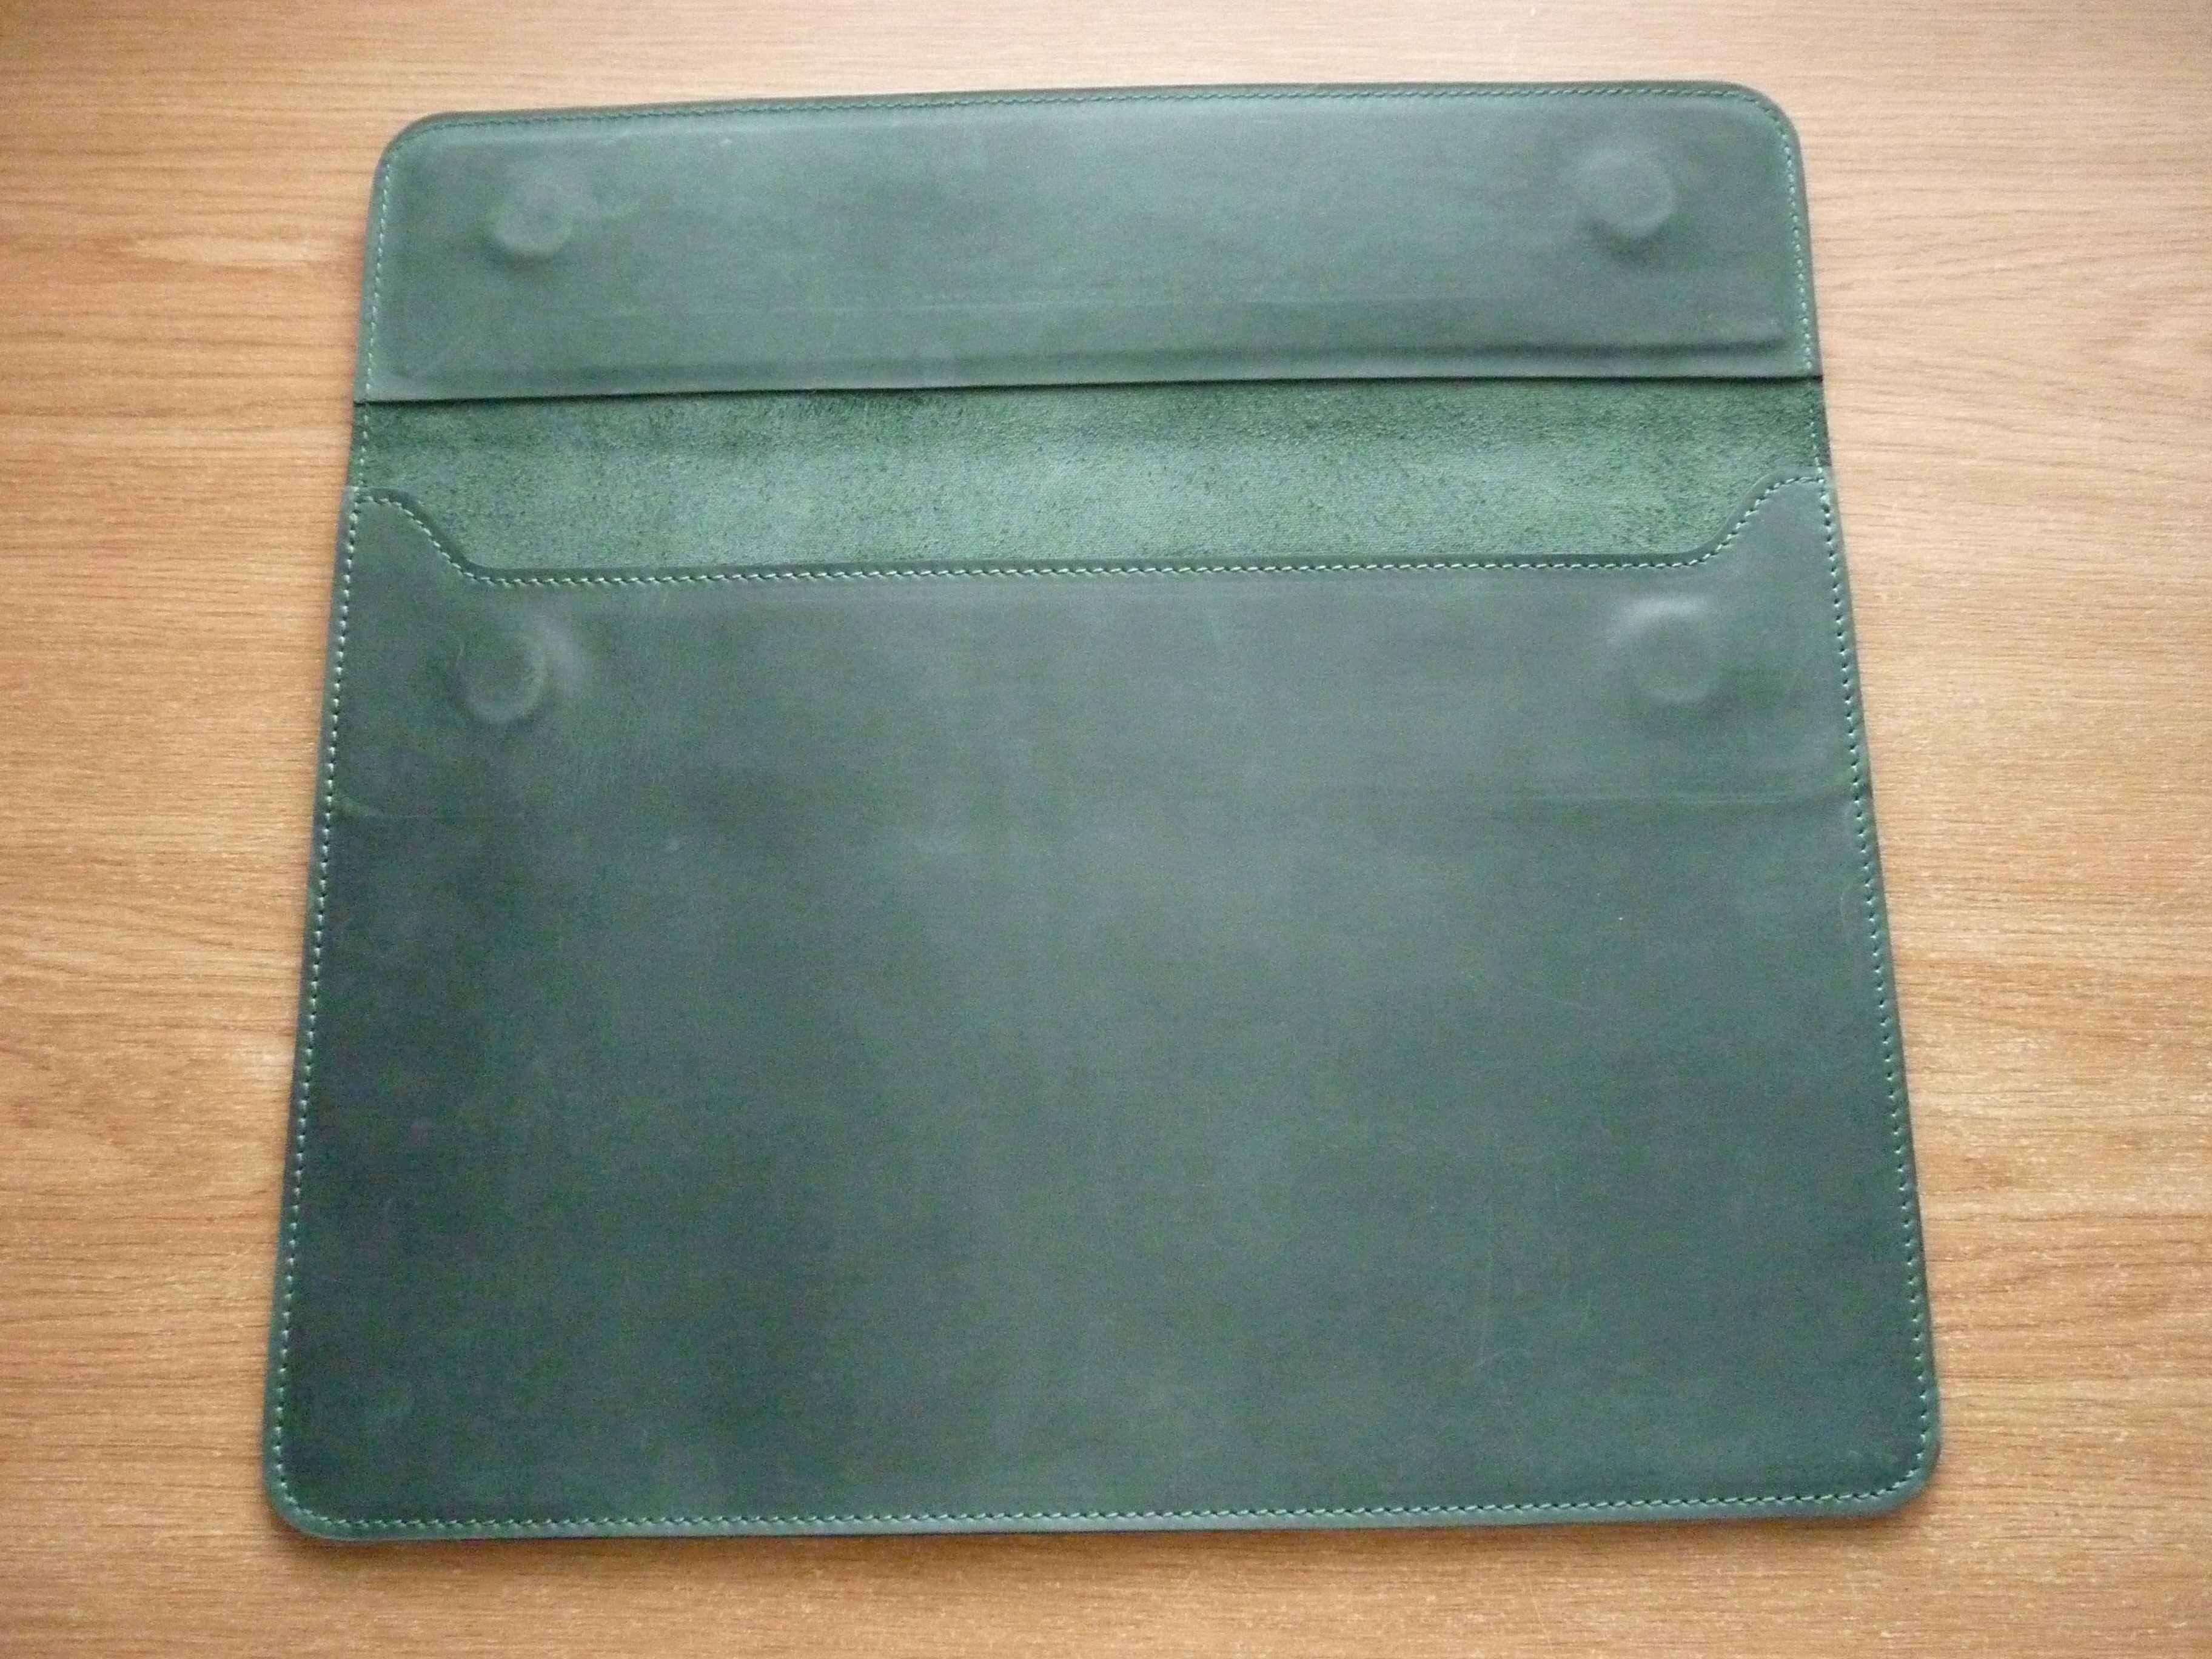 Зеленый чехол из кожи на MACBооK AIR/PRO 13'', конверт